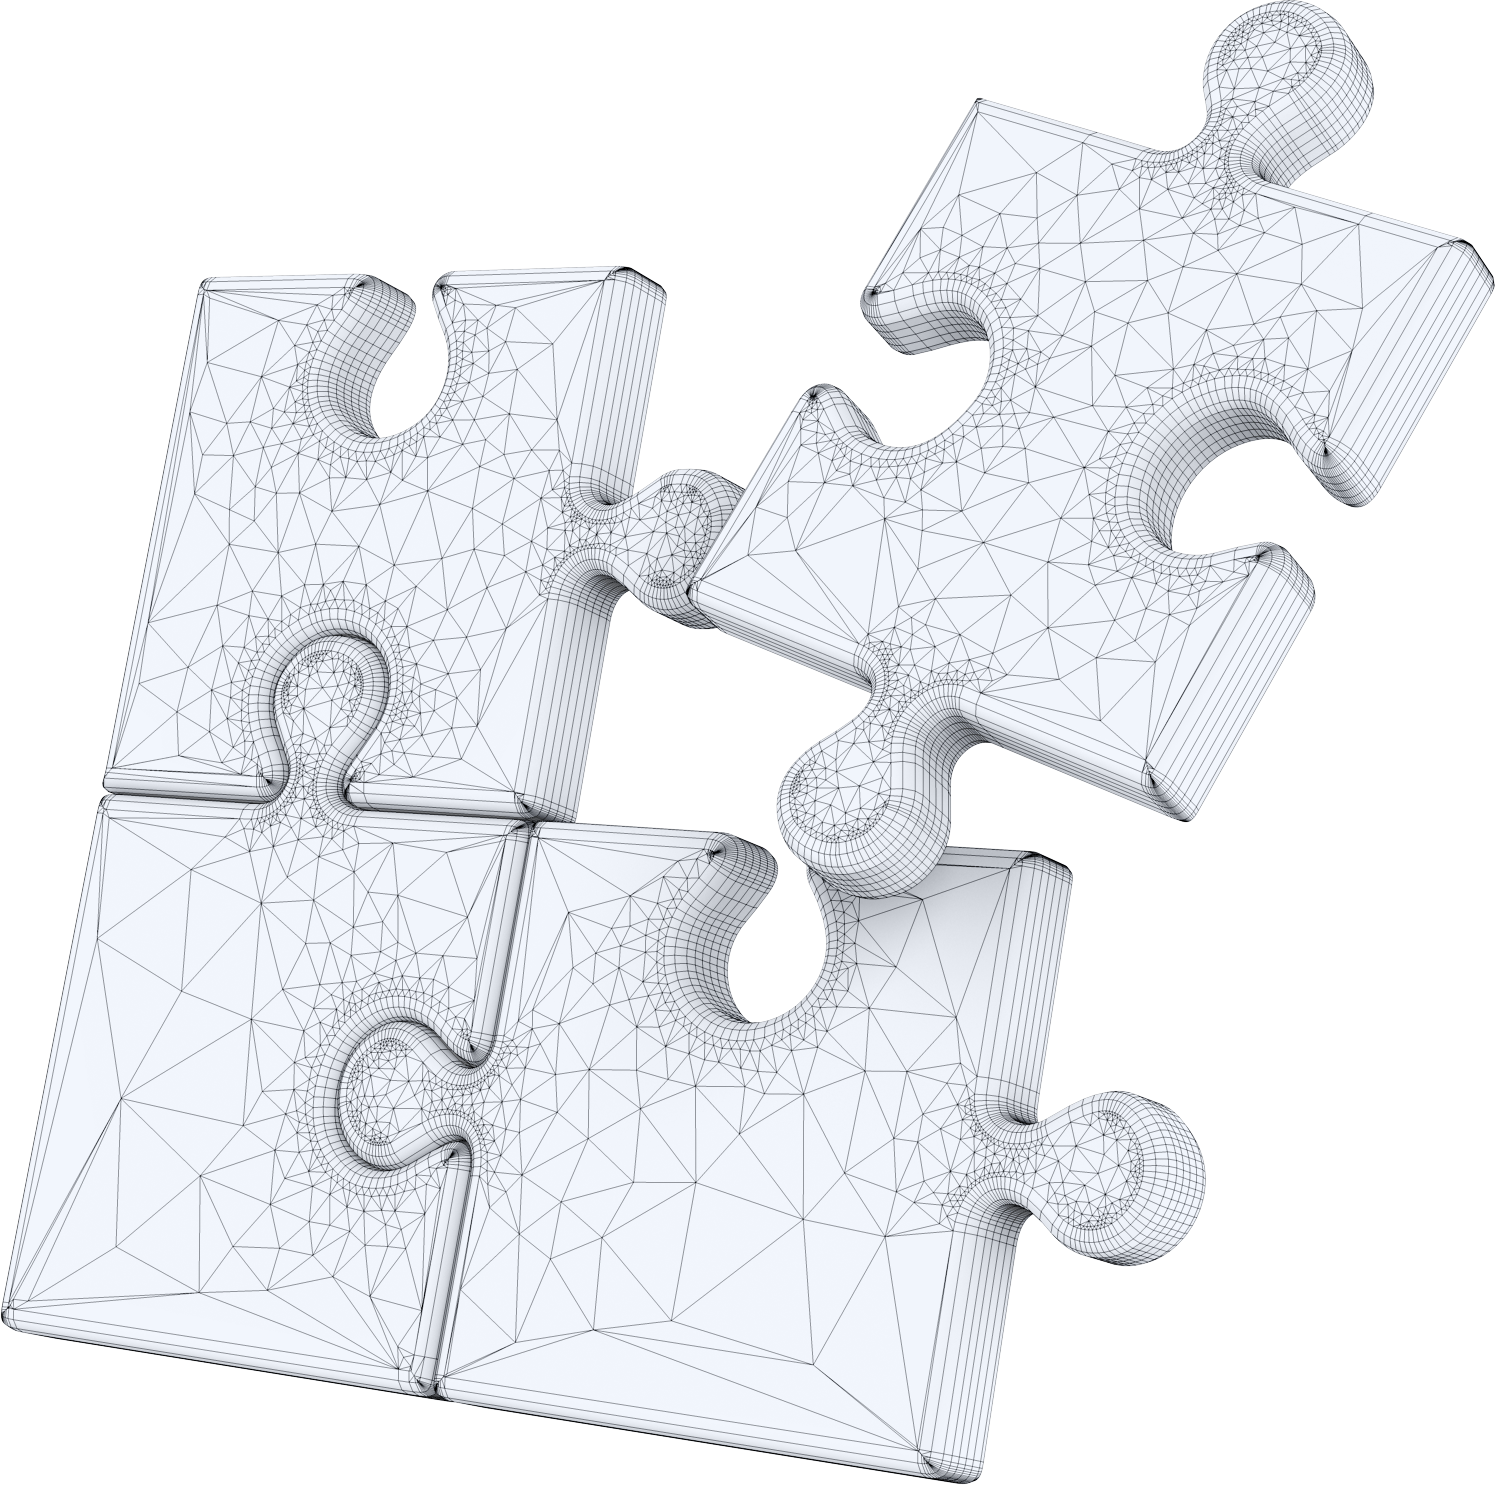 Vier Puzzleteile, die sich zusammenfügen, von dem eins noch nicht zusammengefügt ist als Wireframe